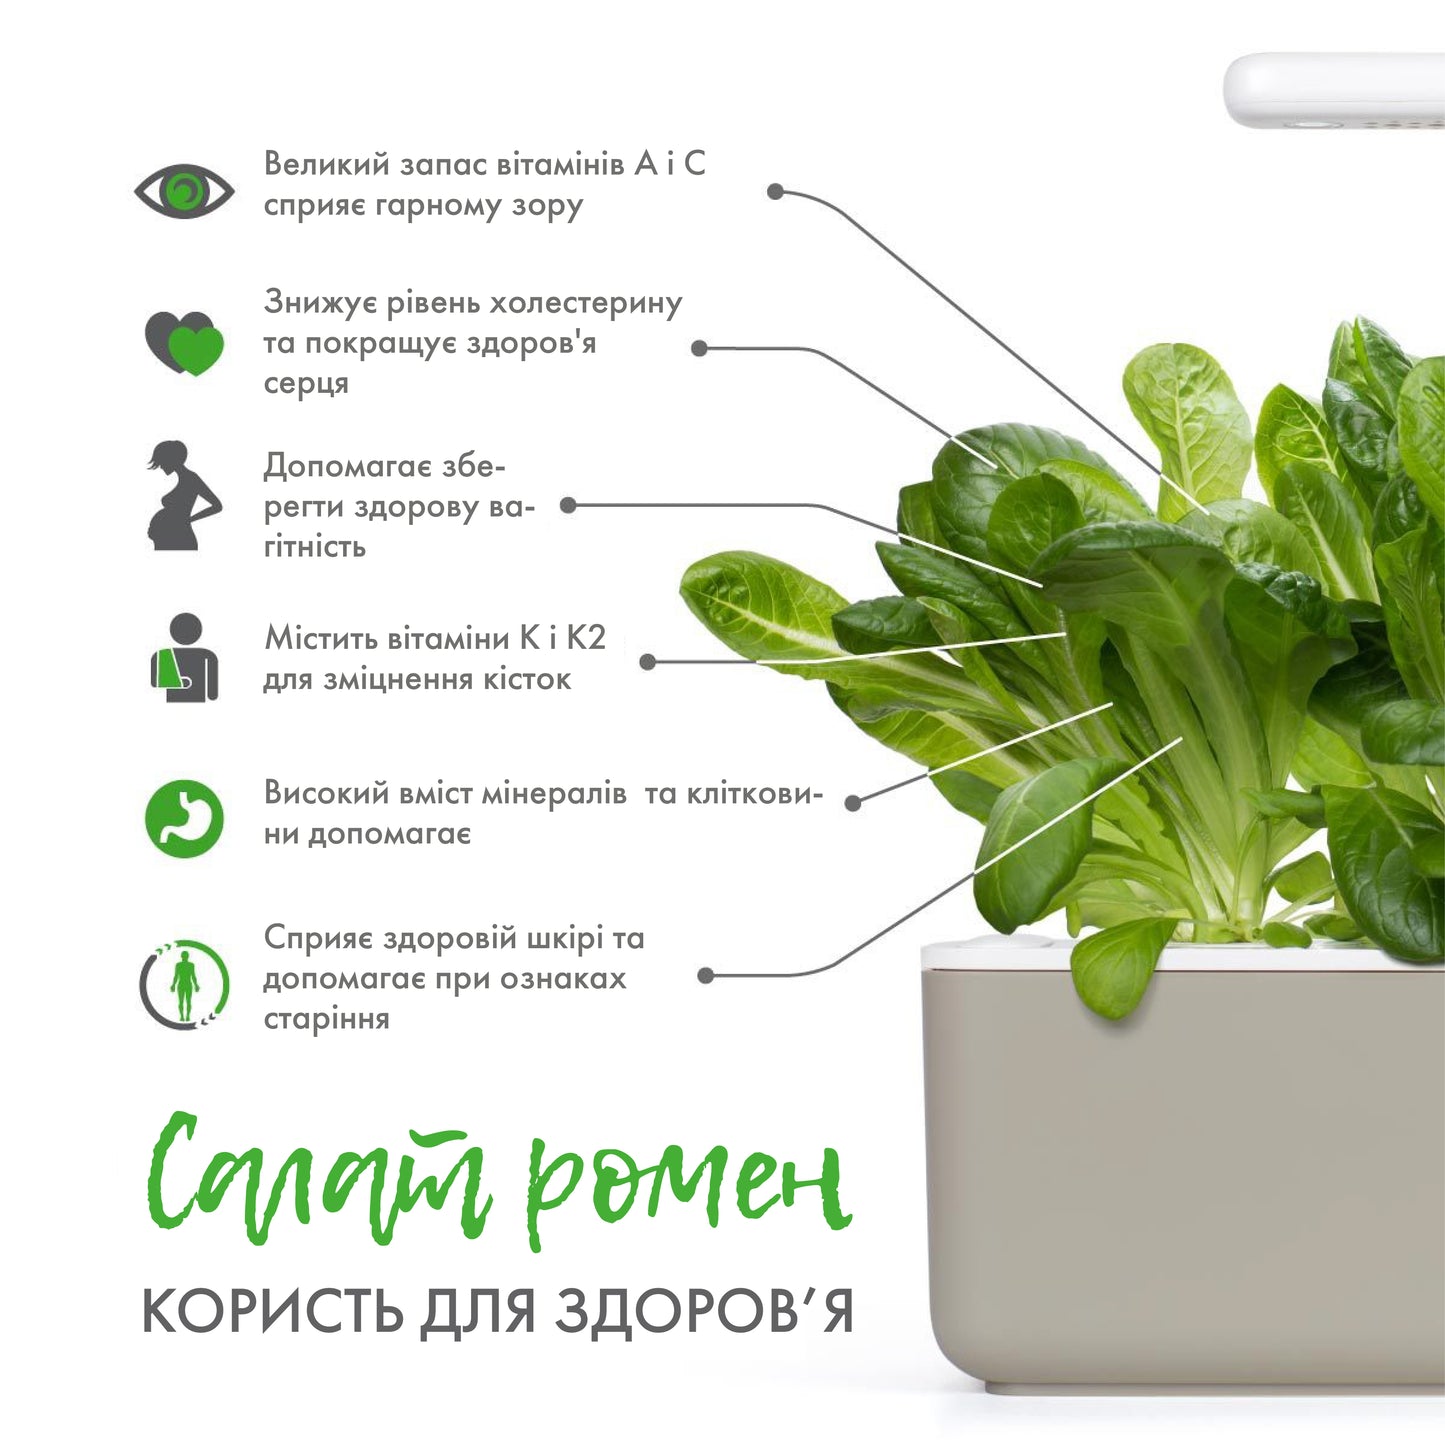 Салат ромен від Click & Grow (змінний картридж на 3 врожаї)